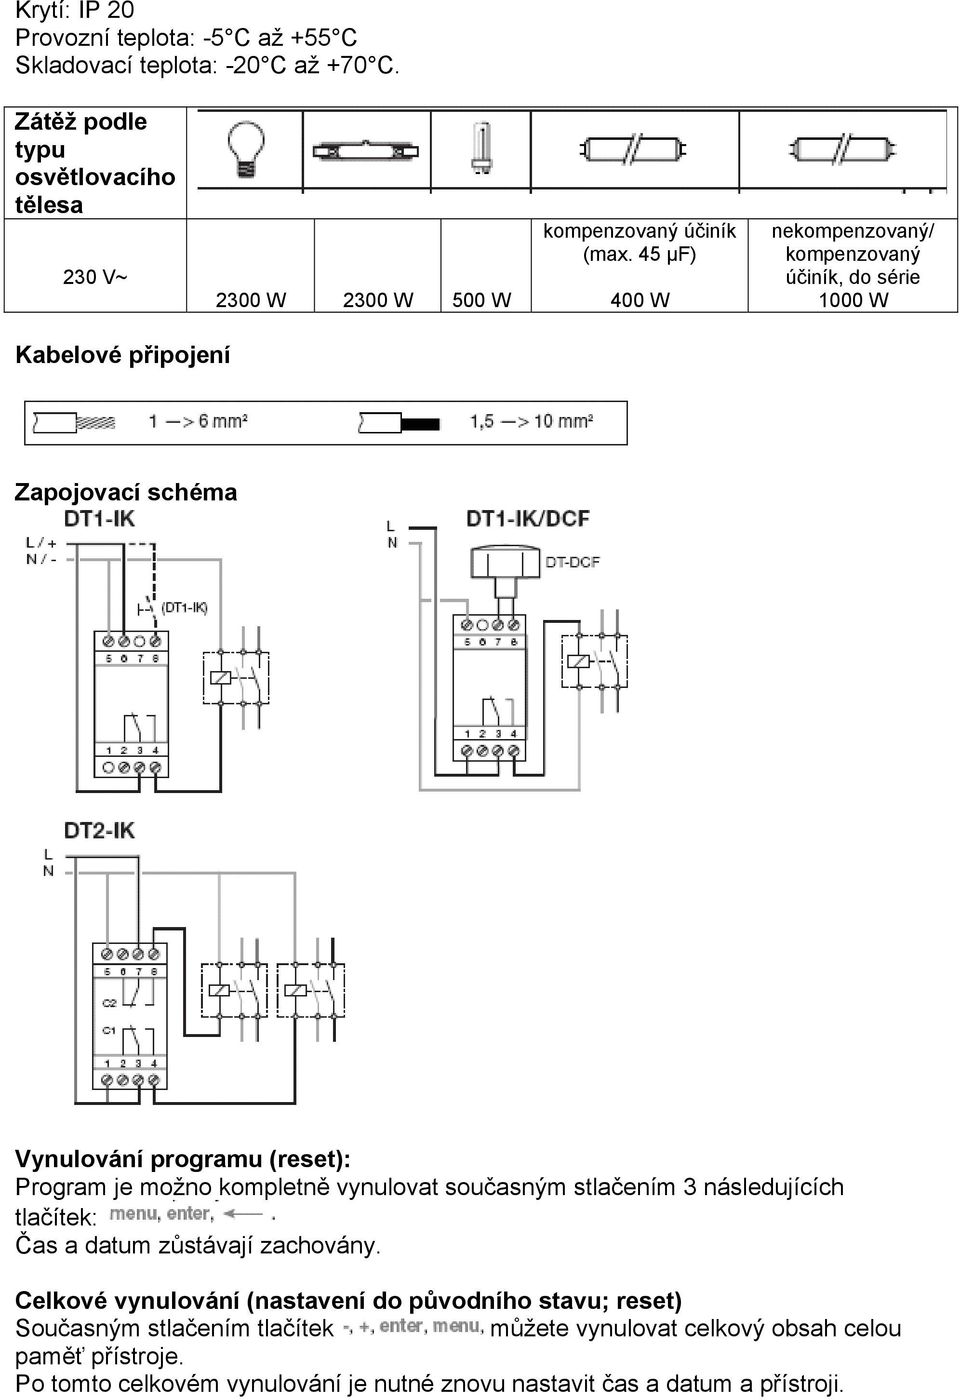 45 μf) 400 W nekompenzovaný/ kompenzovaný účiník, do série 1000 W Kabelové připojení Zapojovací schéma Vynulování programu (reset): Program je možno kompletně